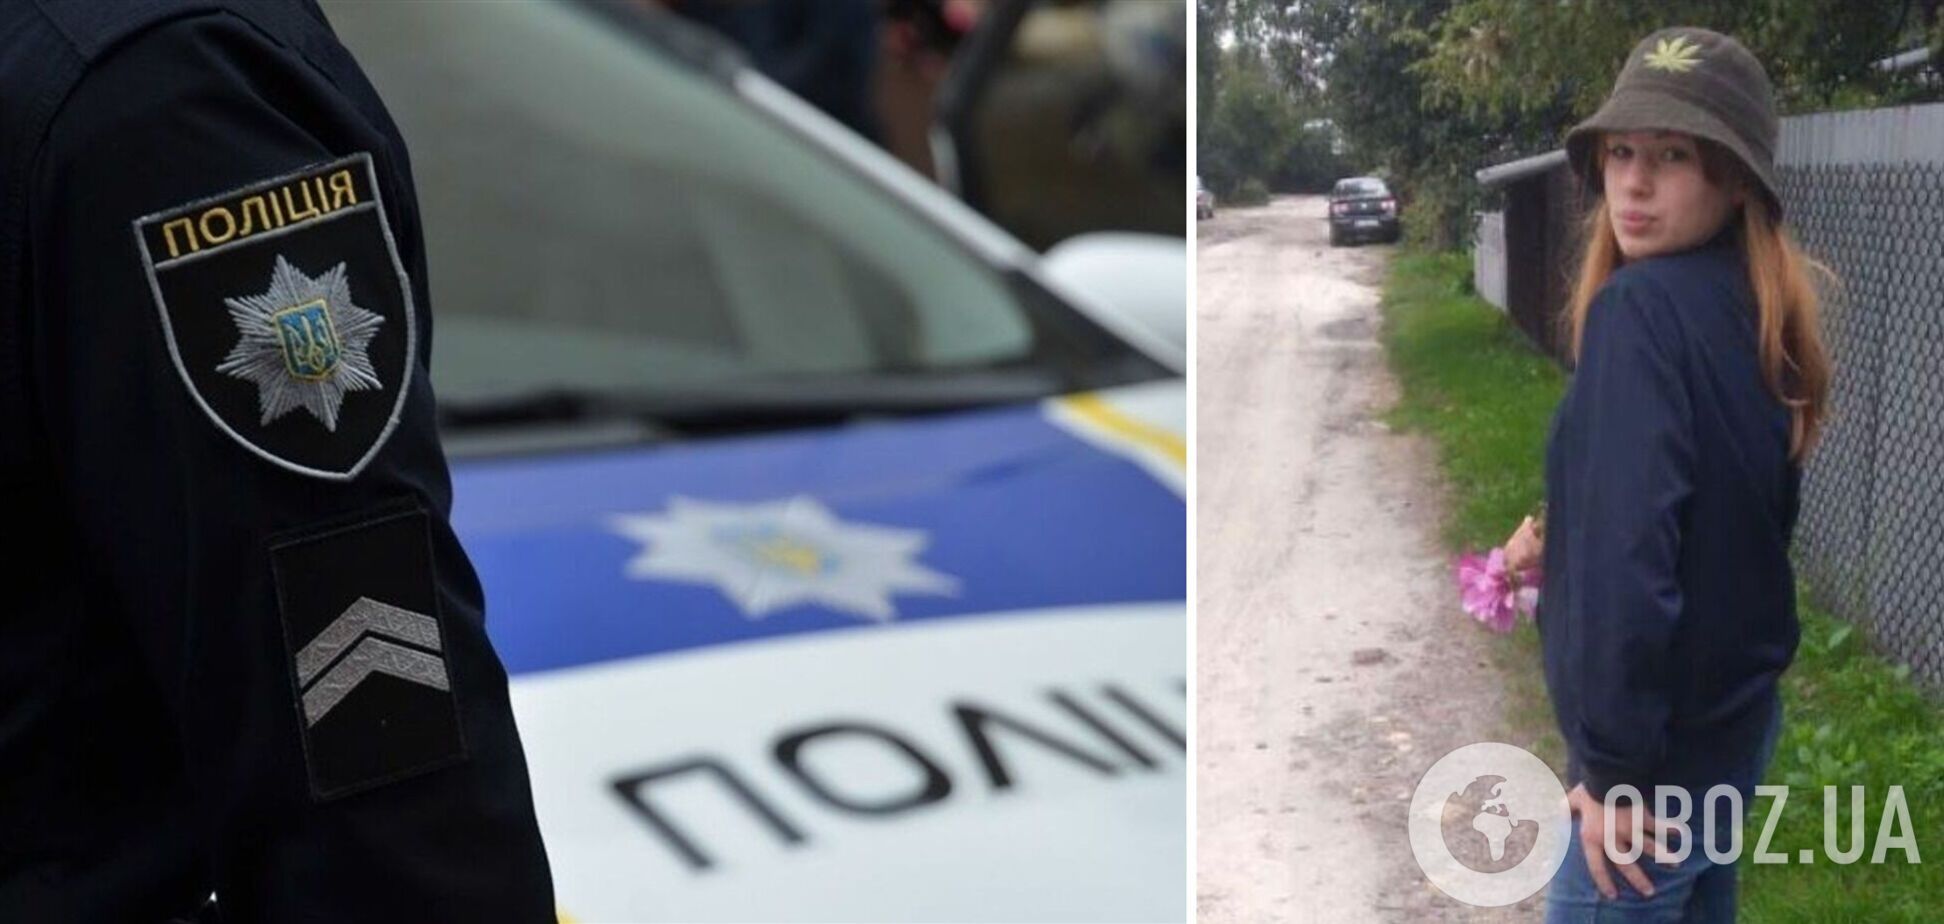 Во Львове при странных обстоятельствах исчезла 13-летняя девочка: фото и приметы